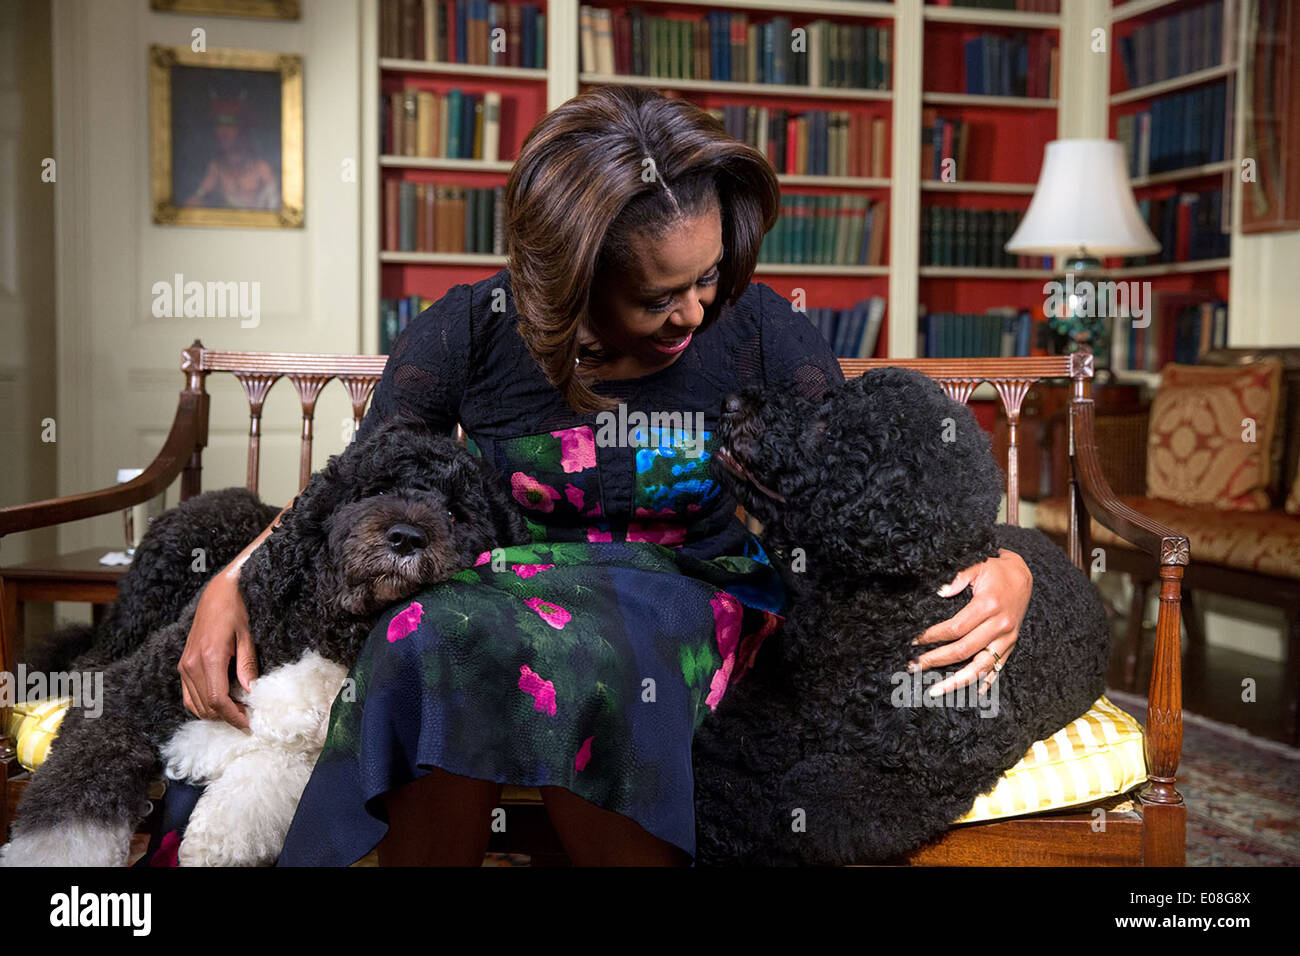 Première Dame Michelle Obama Obama avec animaux domestiques de la famille Bo, à gauche, et ensoleillé, des cassettes vidéo pour Ellen DeGeneres' 56e anniversaire à la Maison Blanche le 28 janvier 2014 Bibliothèque à Washington, DC. Banque D'Images